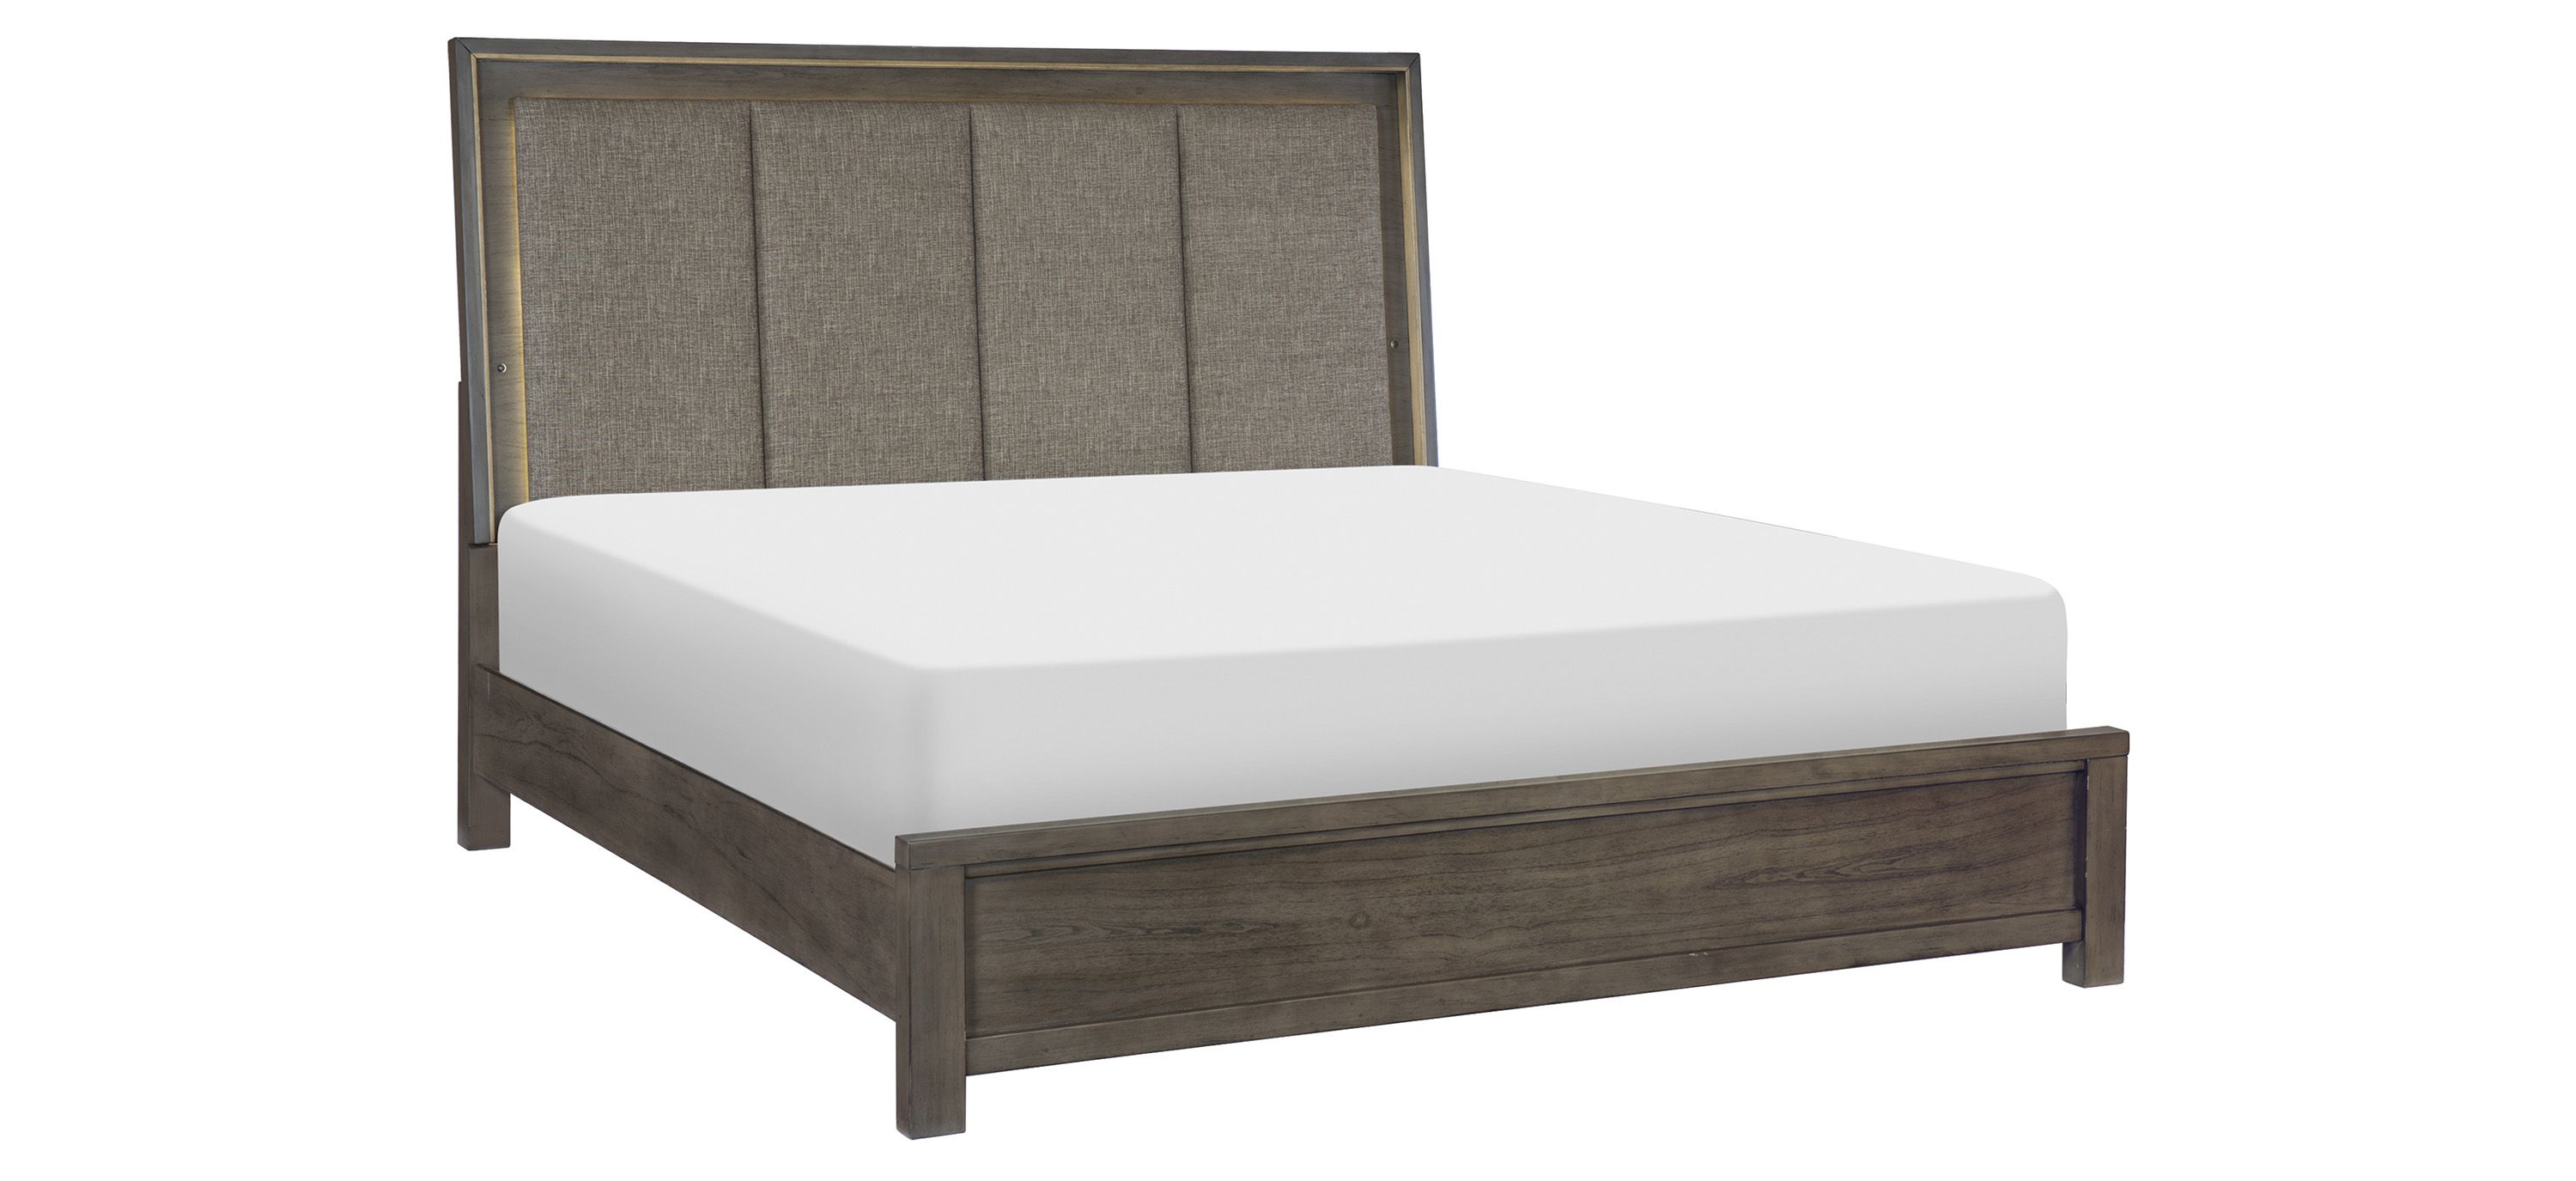 Danridge Upholstered Panel Bed